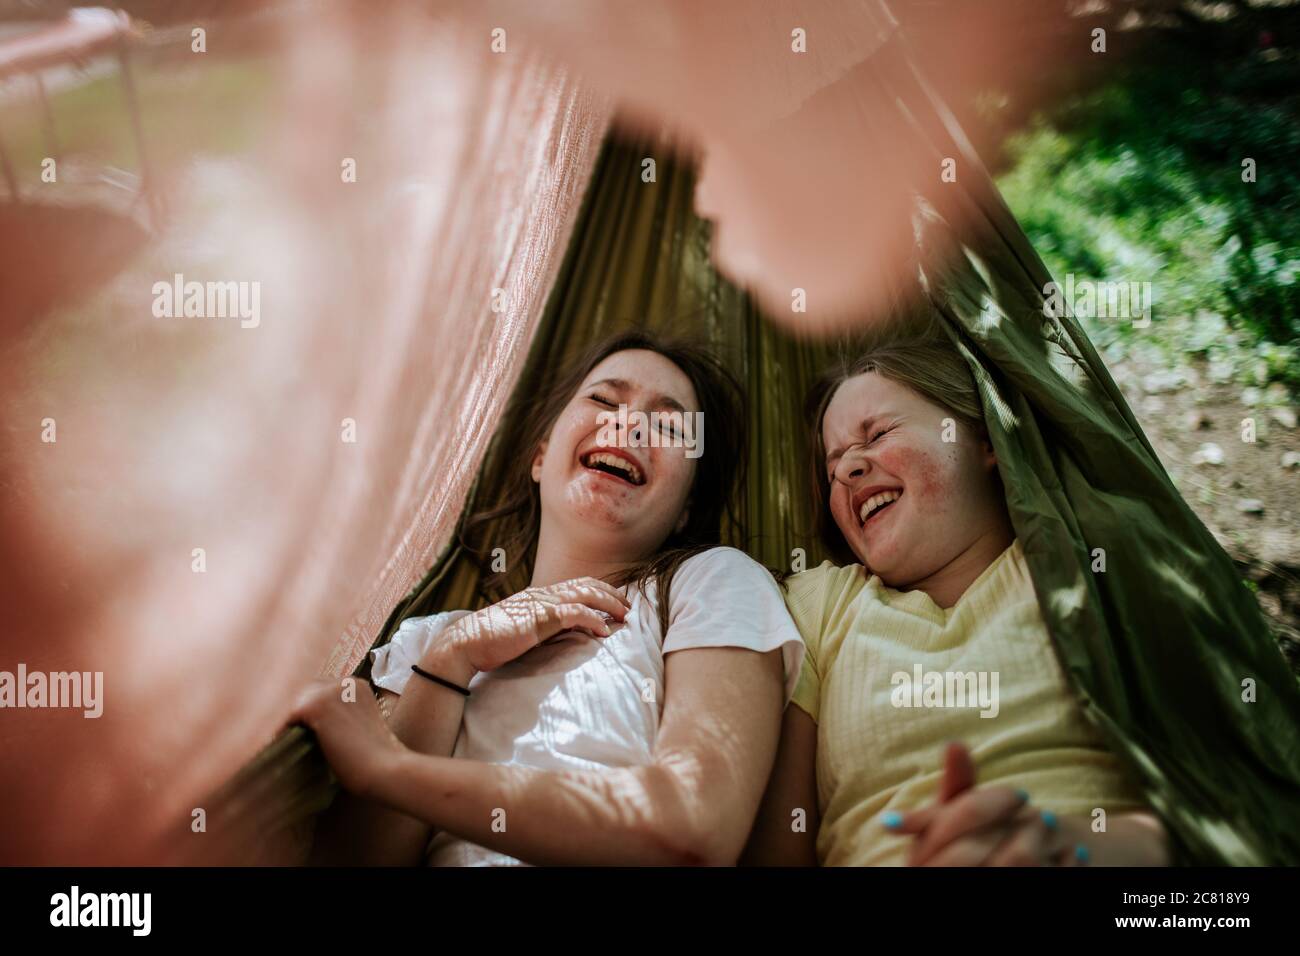 Junge Mädchen lachen und kichern in der Hängematte Stockfoto